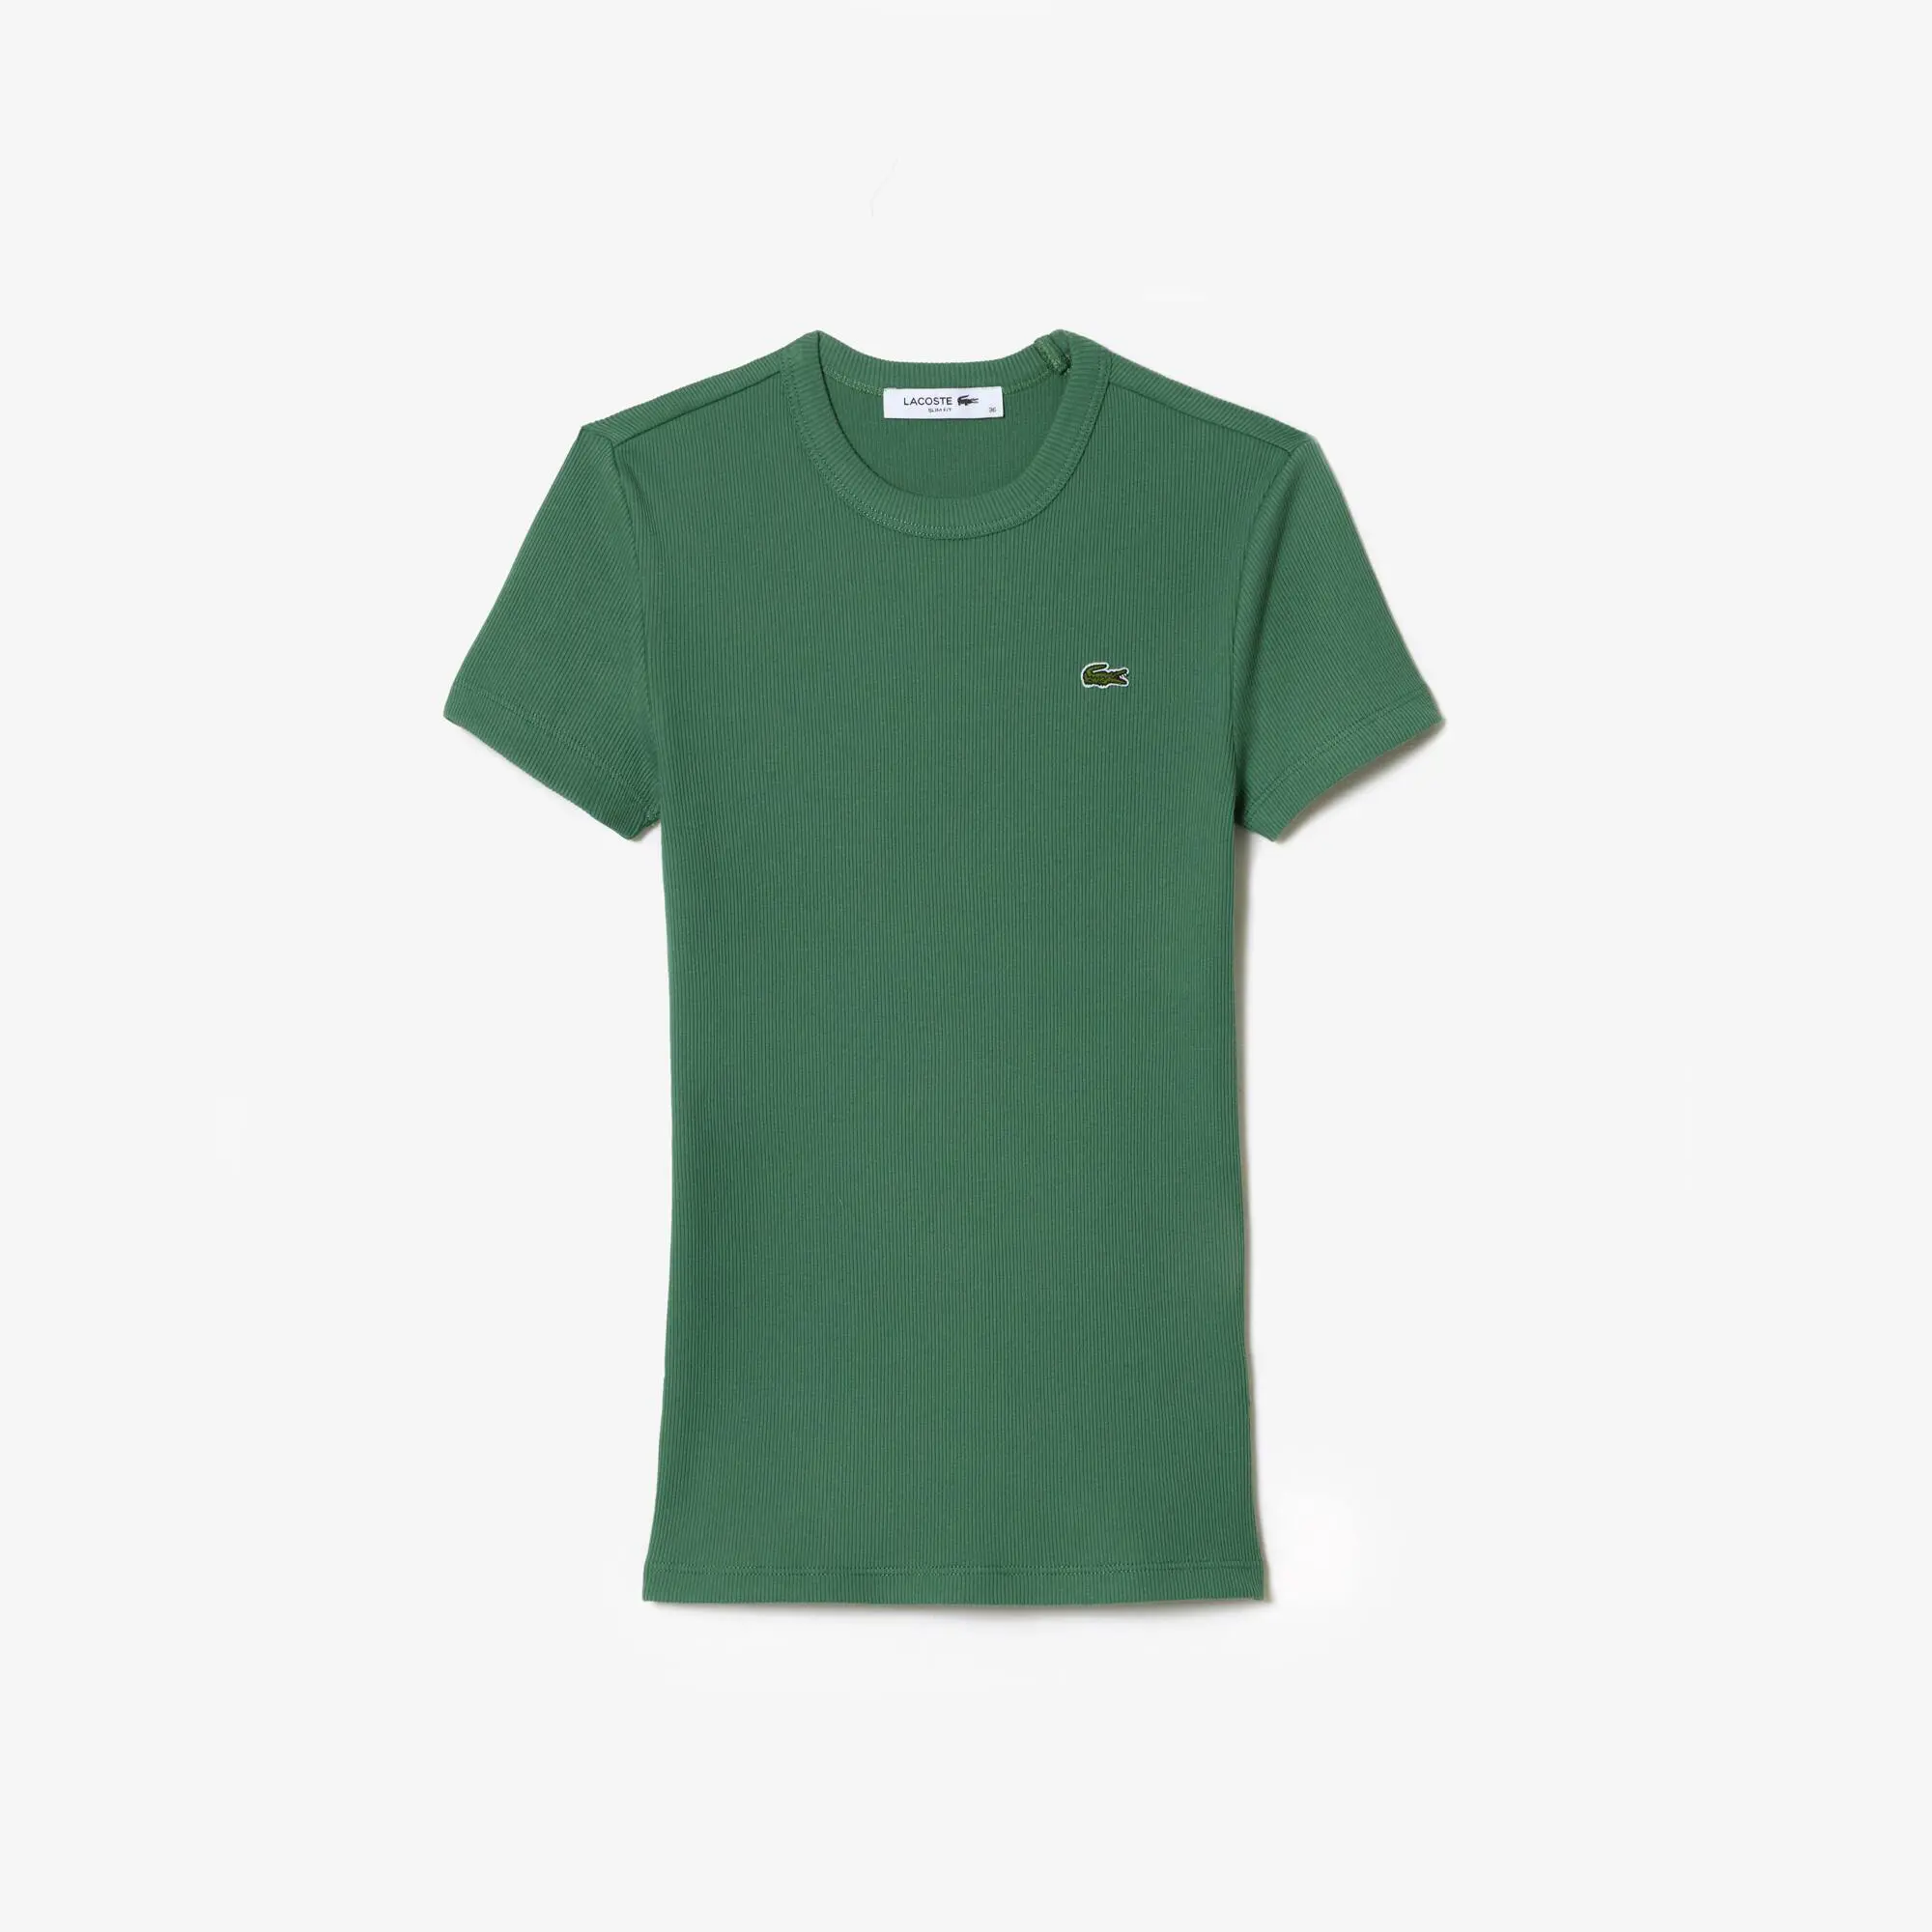 Lacoste Women’s Slim Fit Organic Cotton T-shirt. 2